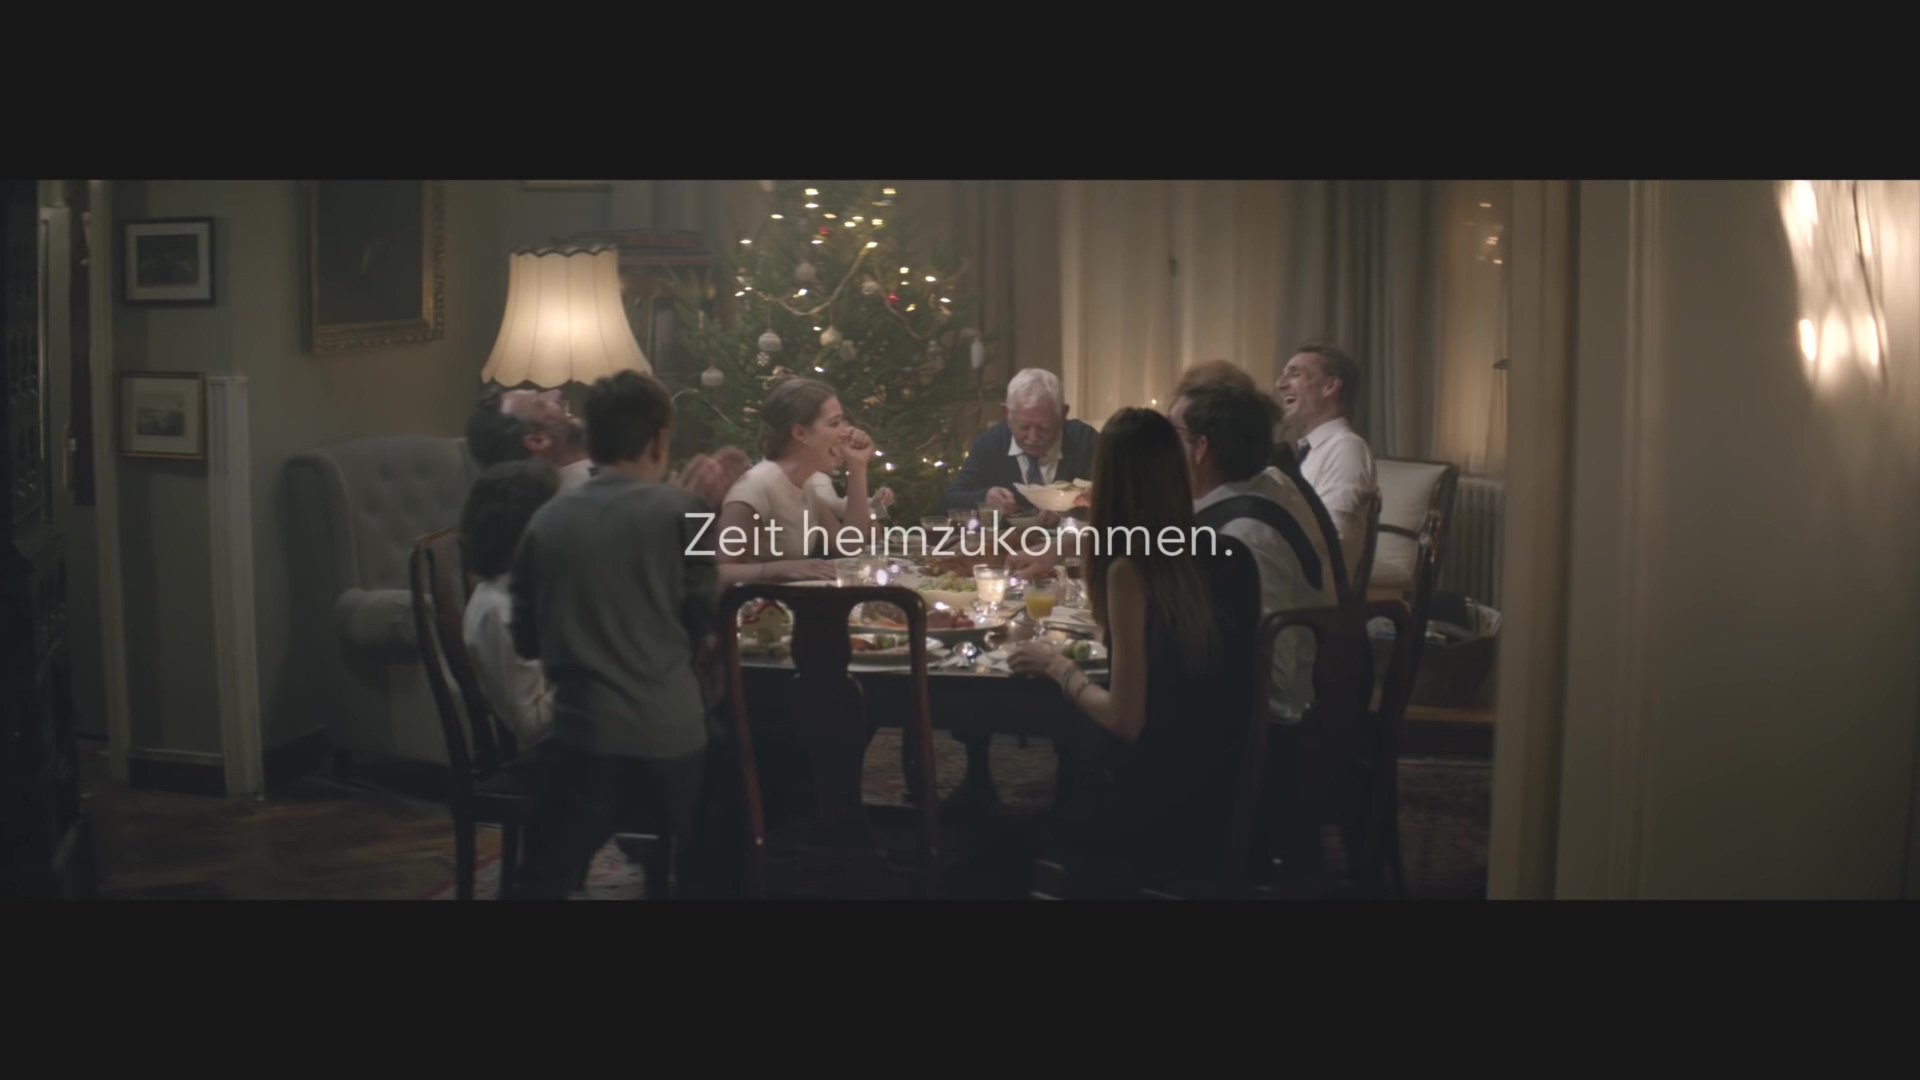 EDEKA Weihnachtsclip(독일 슈퍼마켓 크리마스 광고) - #heimkommen - YouTube (1080p).mp4_20151214_001827.343.jpg